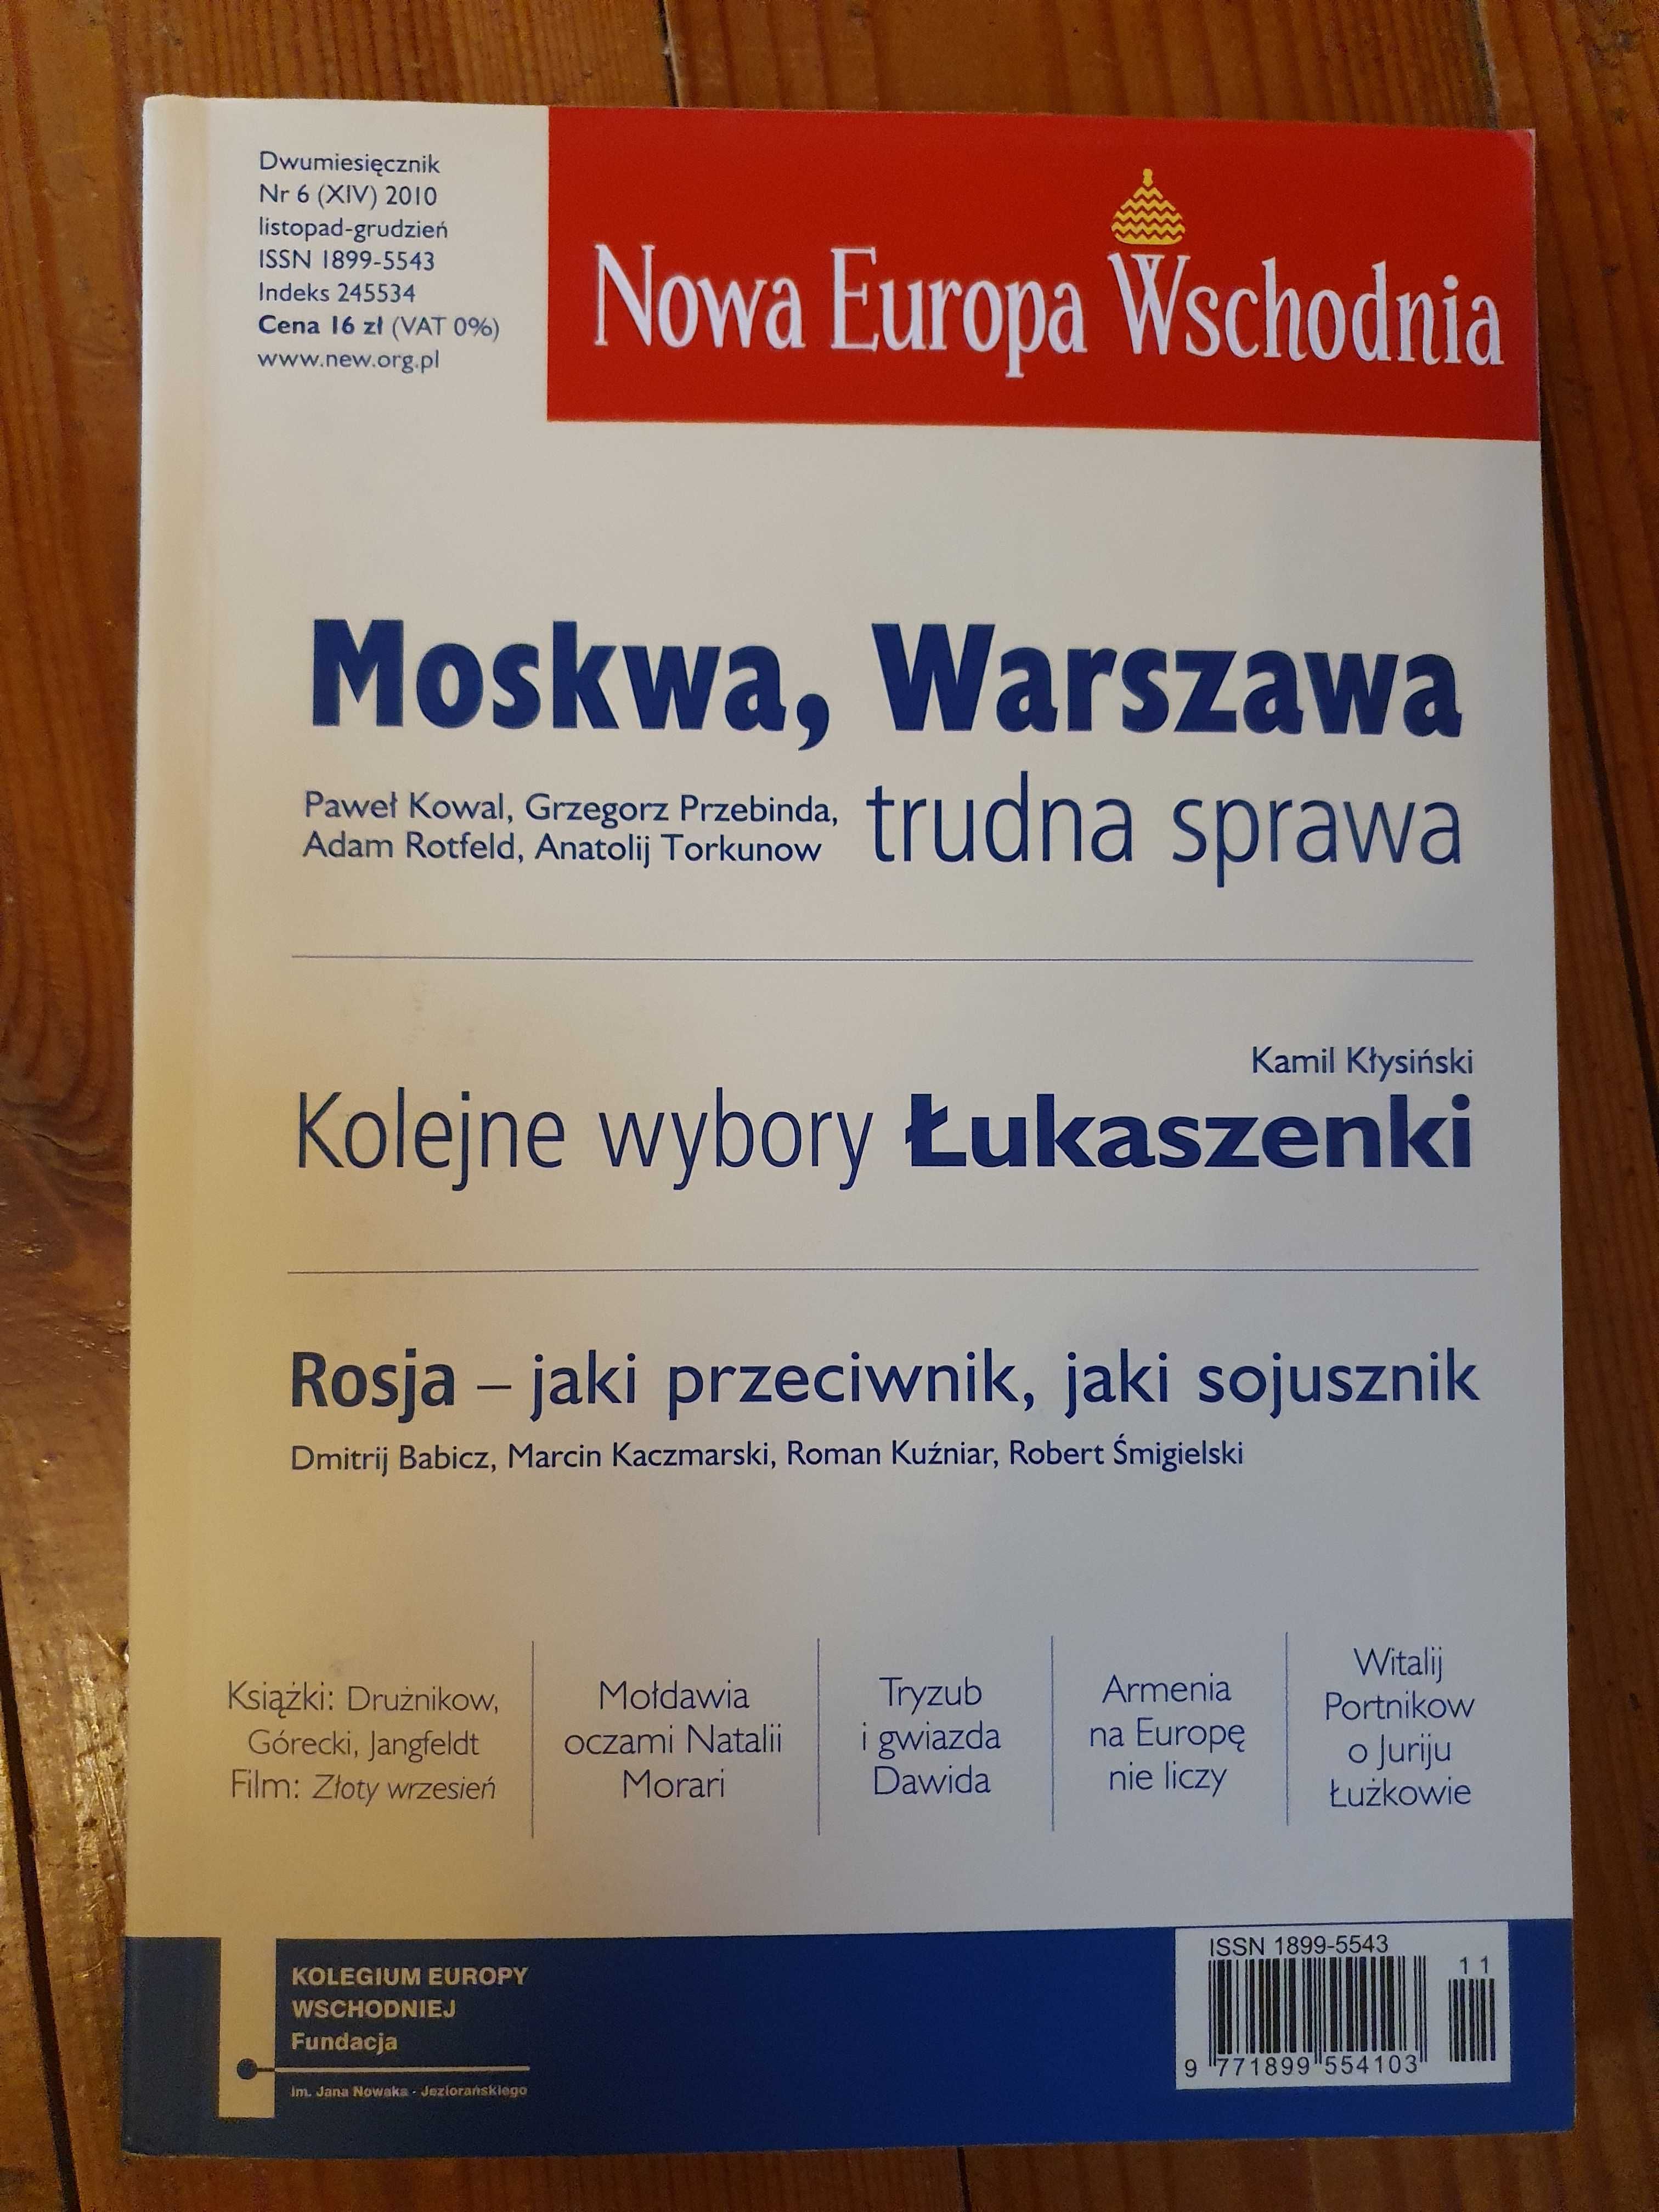 Nowa Europa Wschodnia - dwumiesięcznik - roczniki od 2010 do 2015